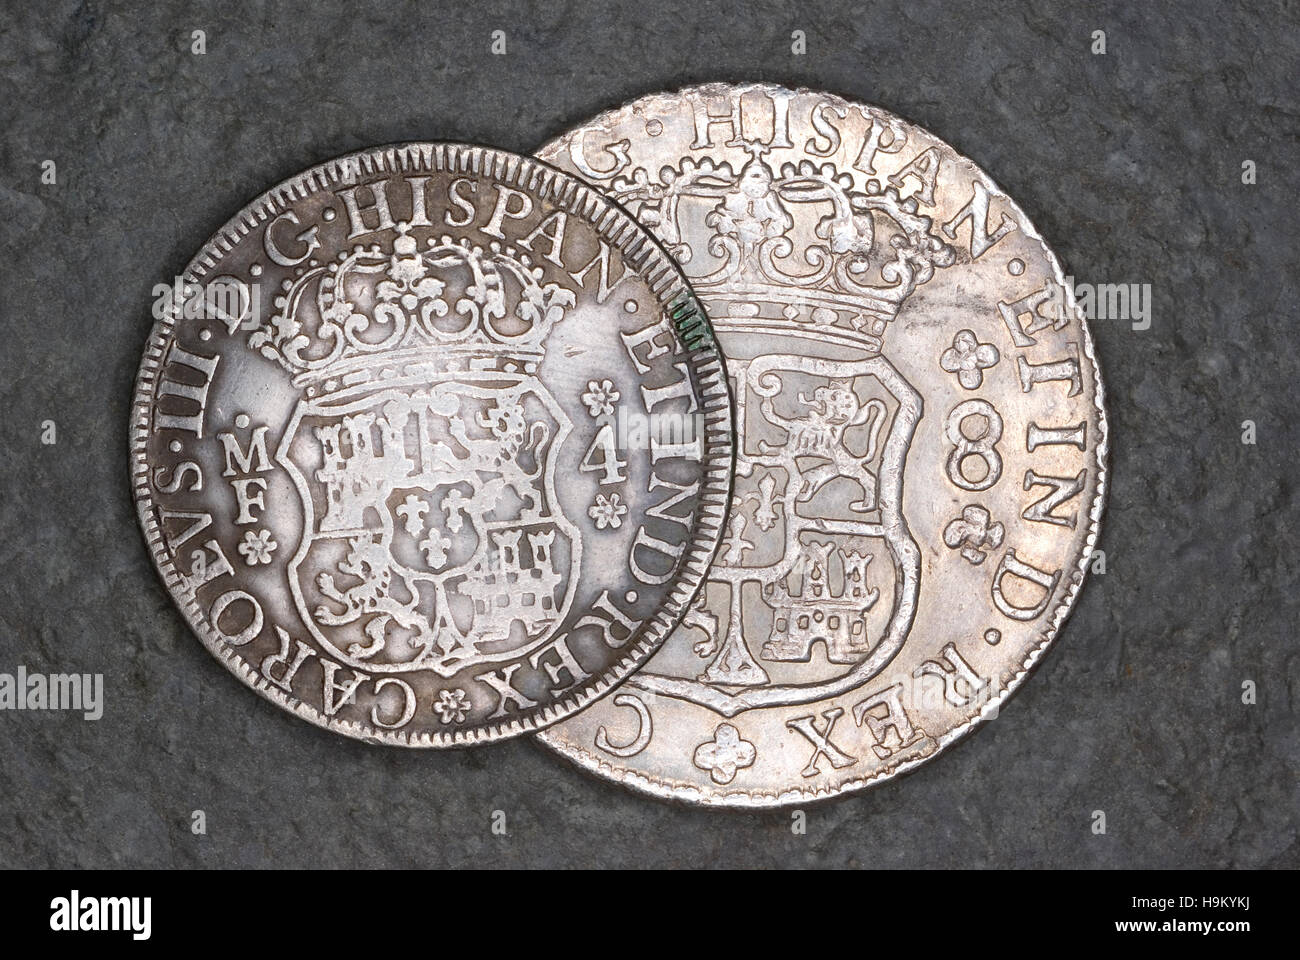 4 und 8 echte Münze von König Charles III von Spanien Stockfoto